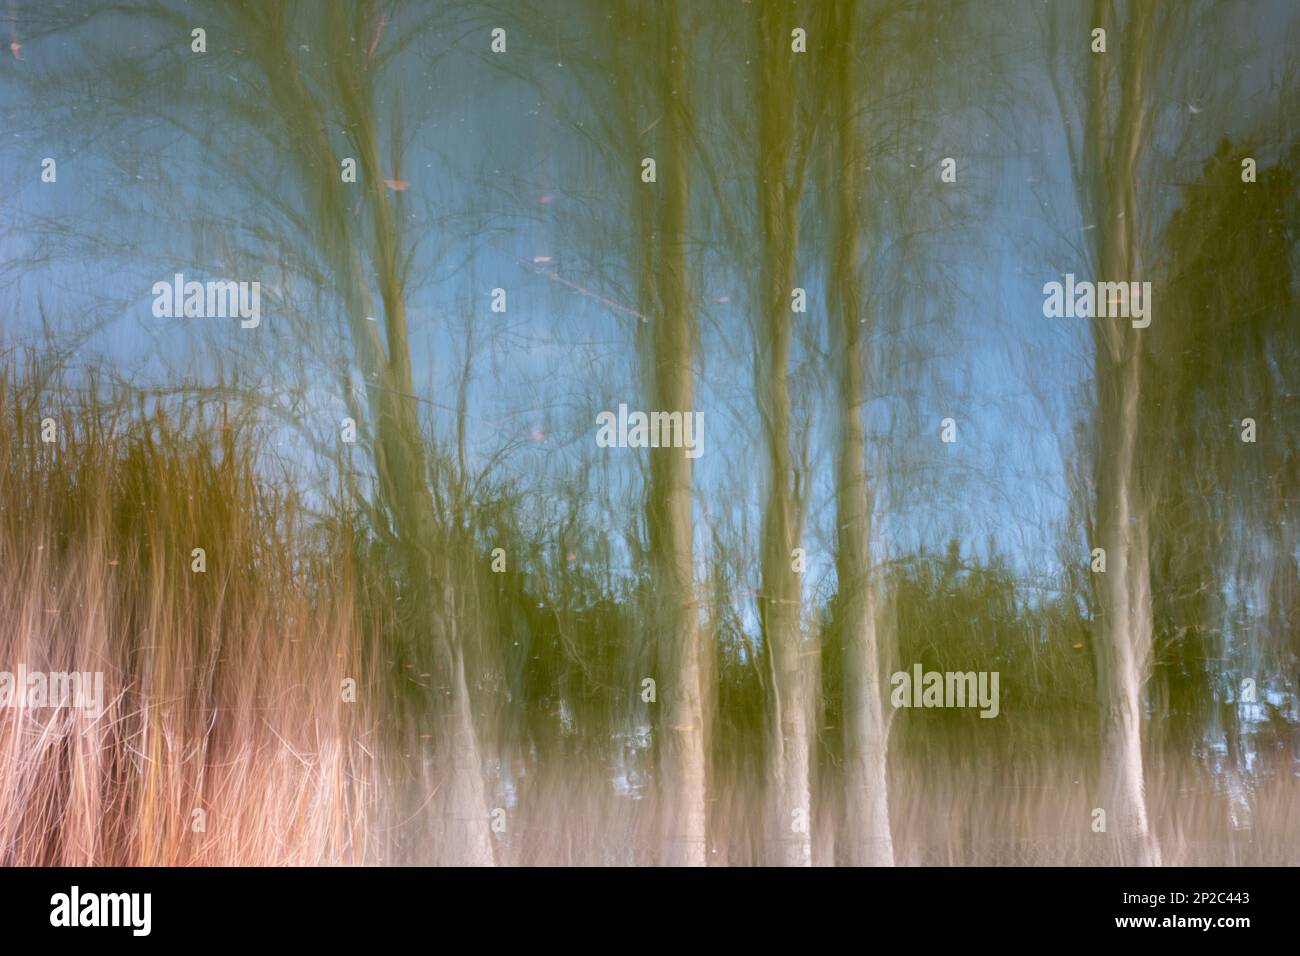 Fotografía de Árboles en el bosque, ICM, movimiento de cámara intencionado Stock Photo